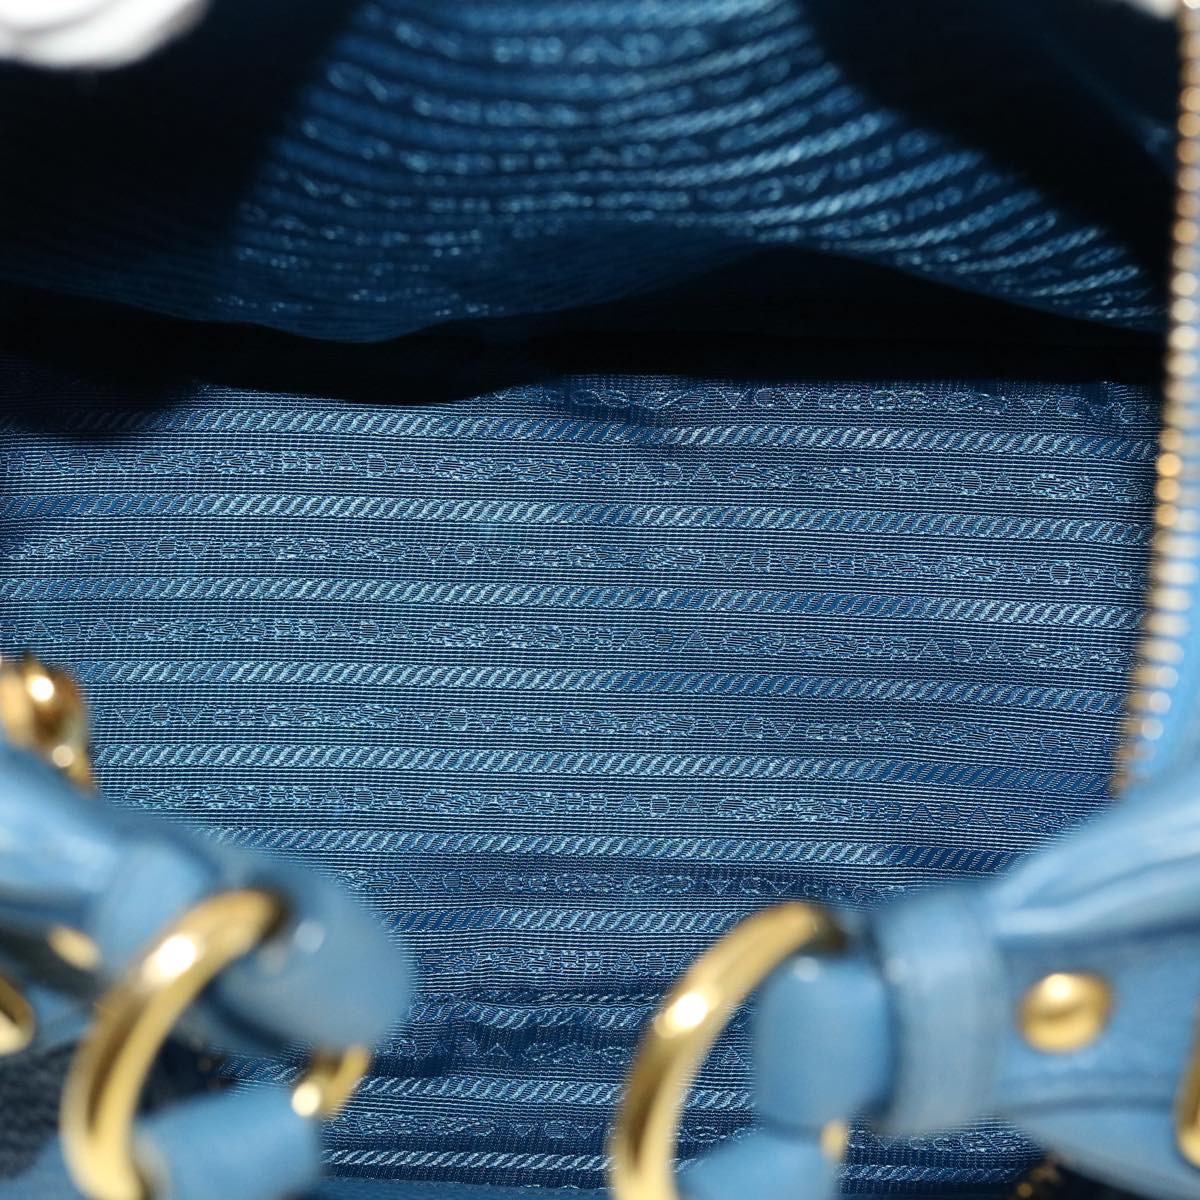 Prada Blue Leather Logo Bag